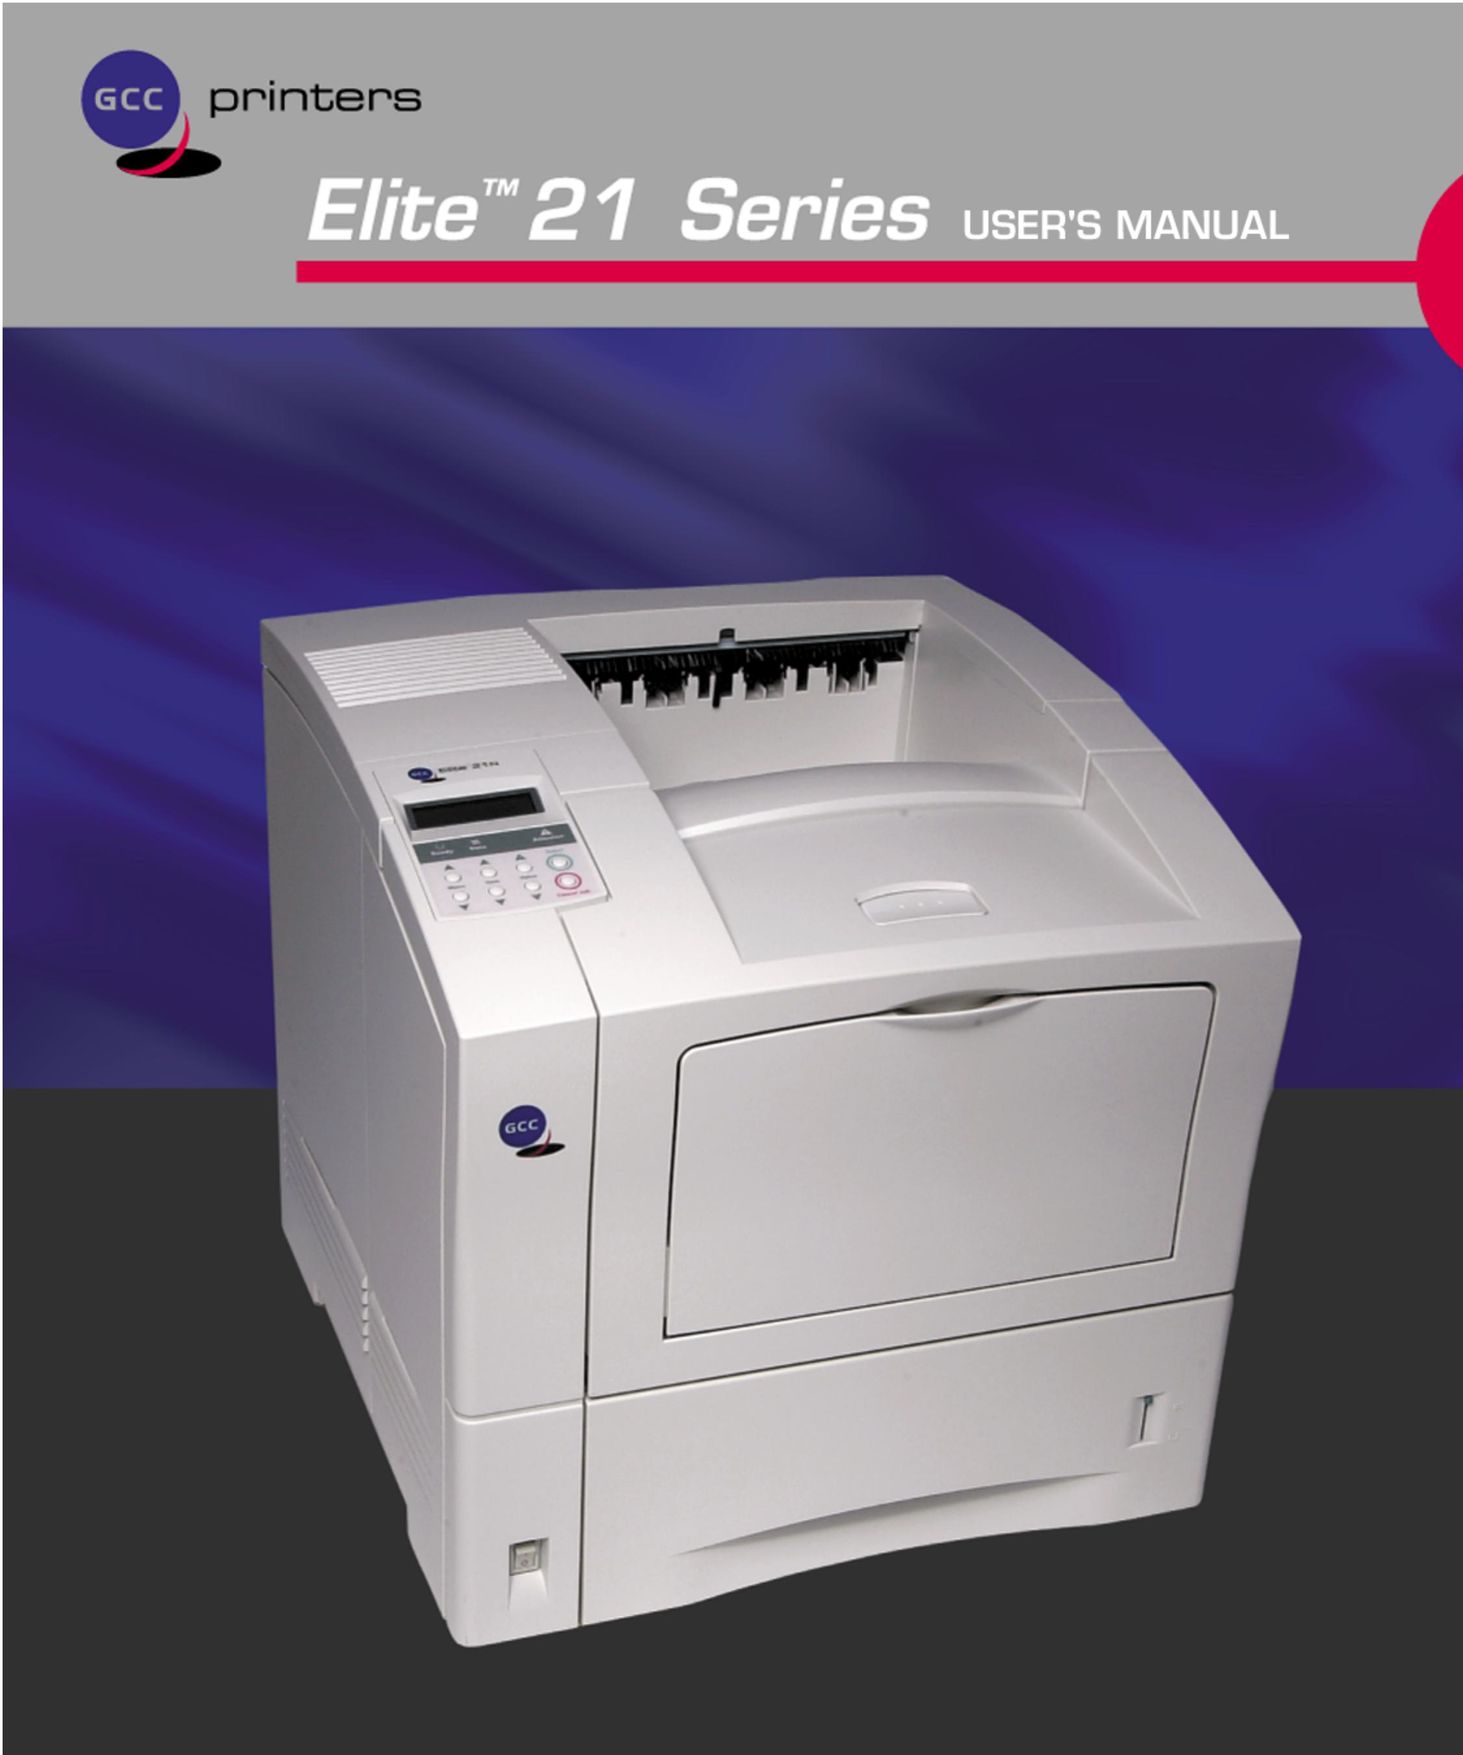 GCC Printers 21 Series Printer User Manual